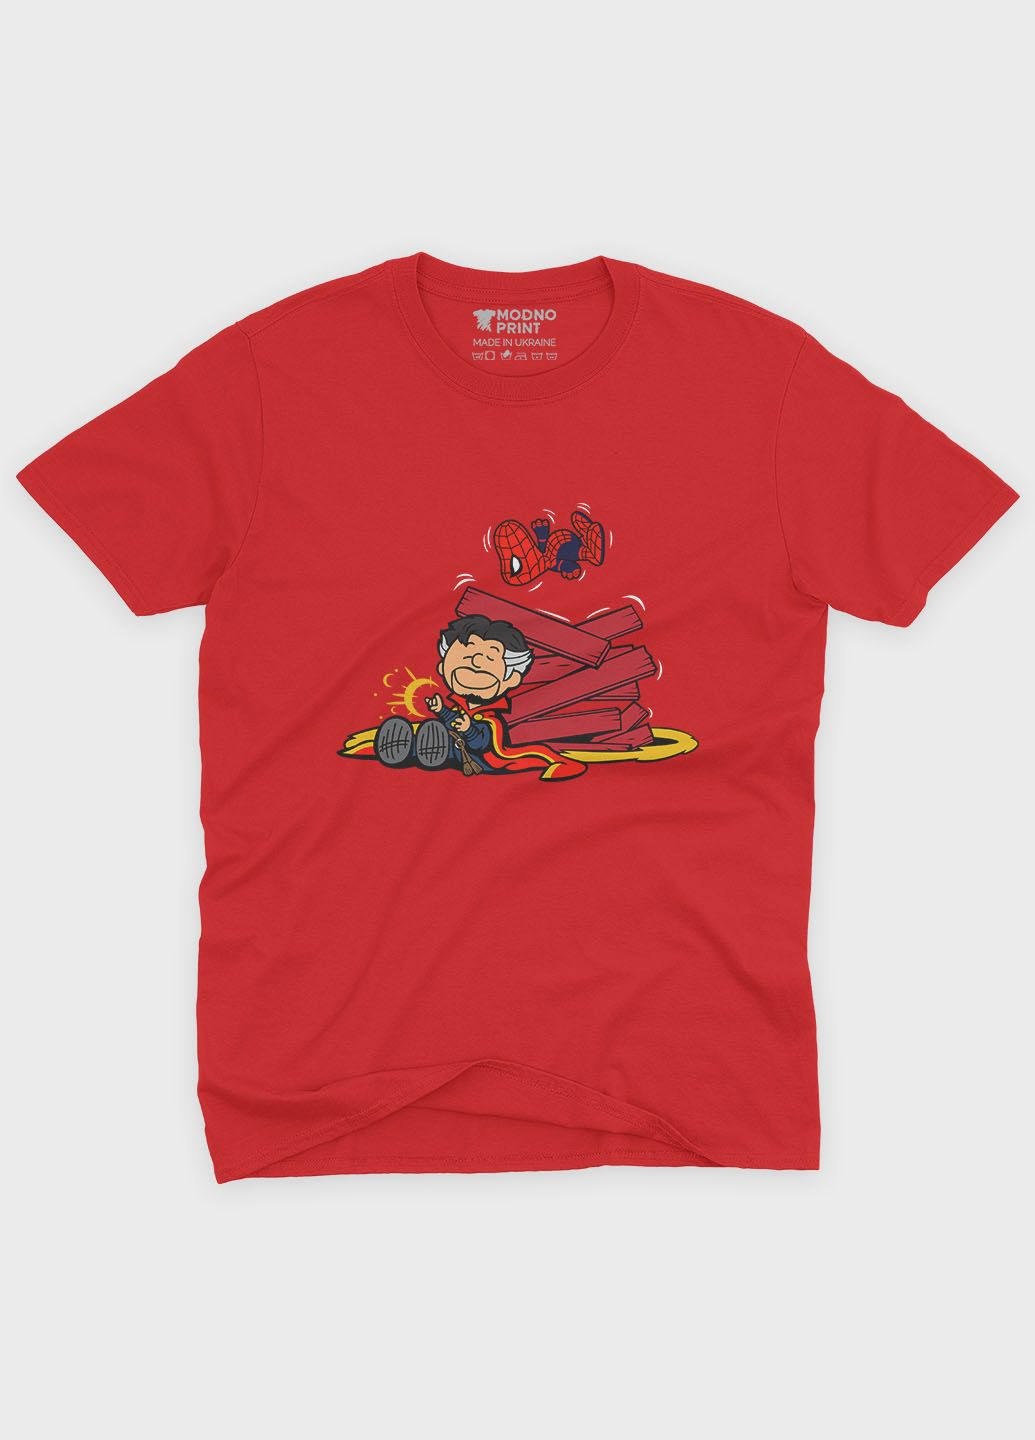 Красная демисезонная футболка для мальчика с принтом супергероя - доктор стрэндж (ts001-1-sre-006-020-009-b) Modno